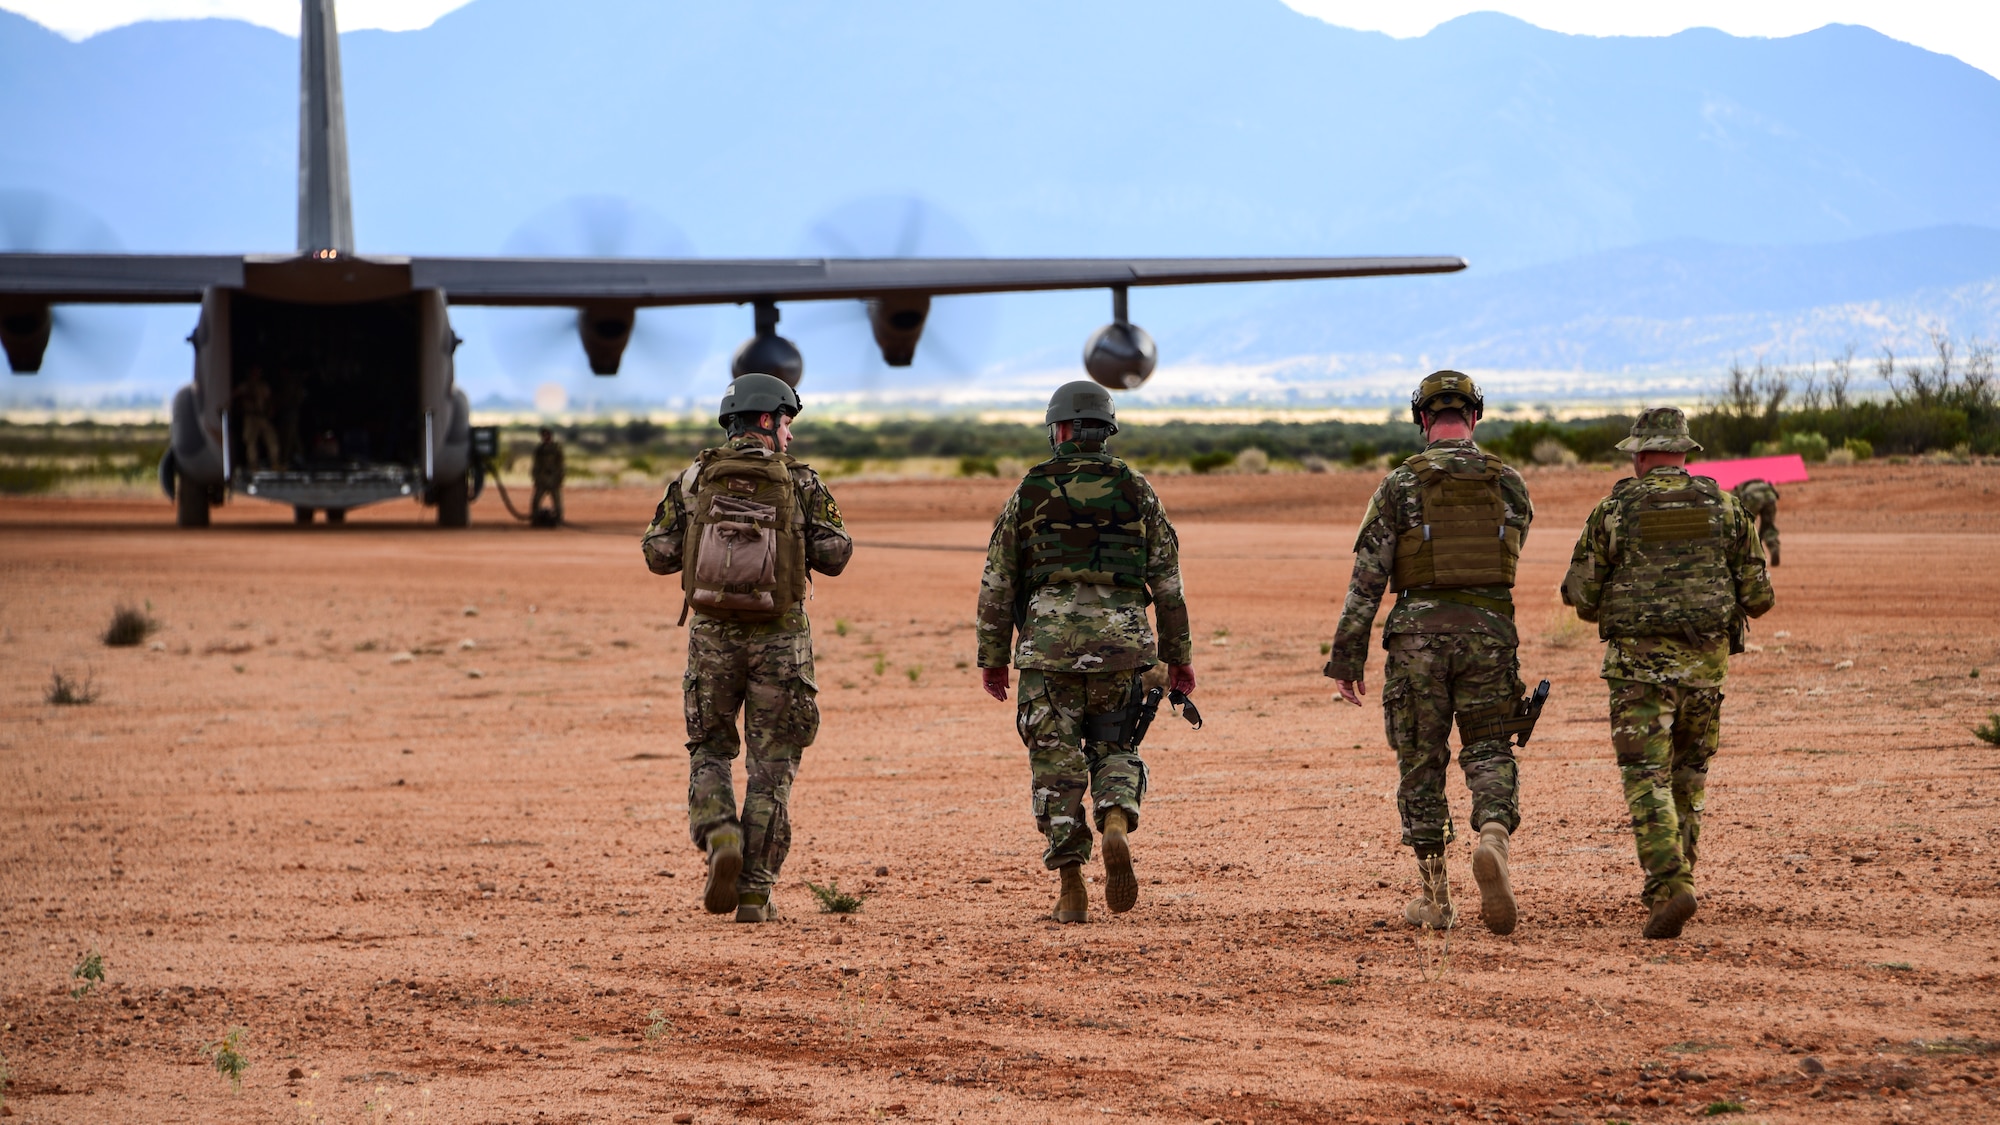 A photo of four airmen walking towards an HC-130J on a dirt runway.